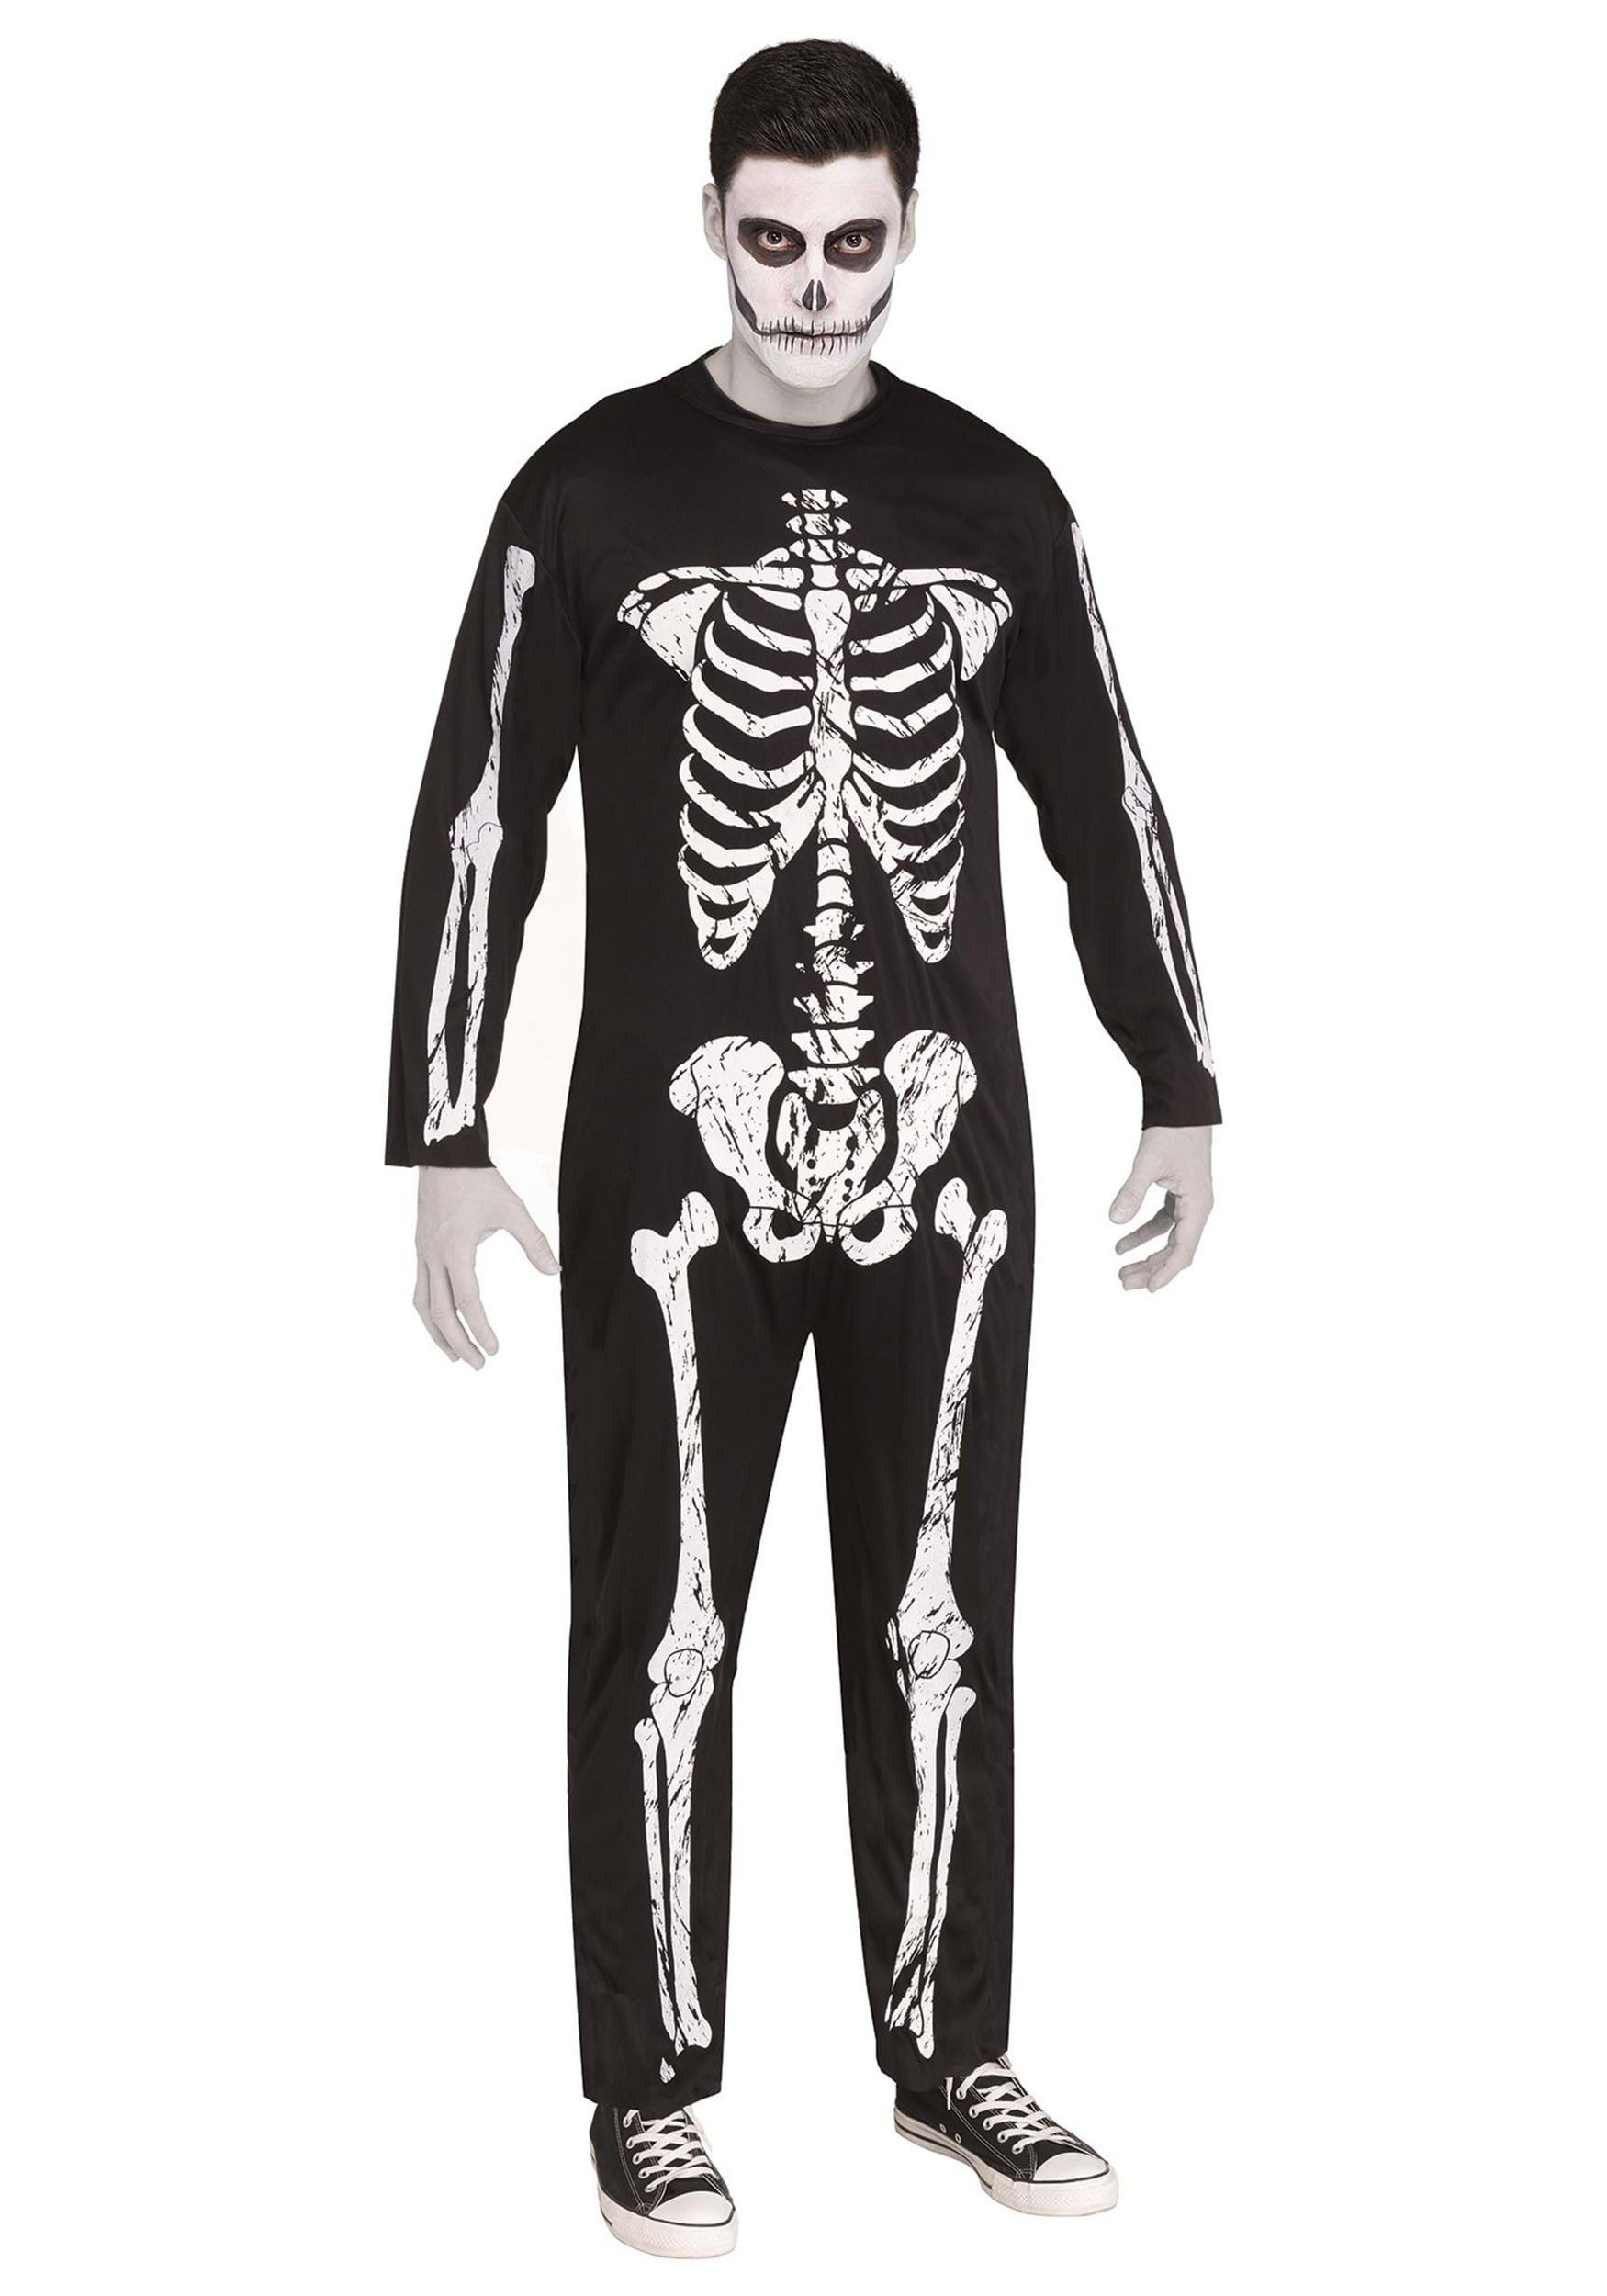 Skeleton Adult Jumpsuit Costume